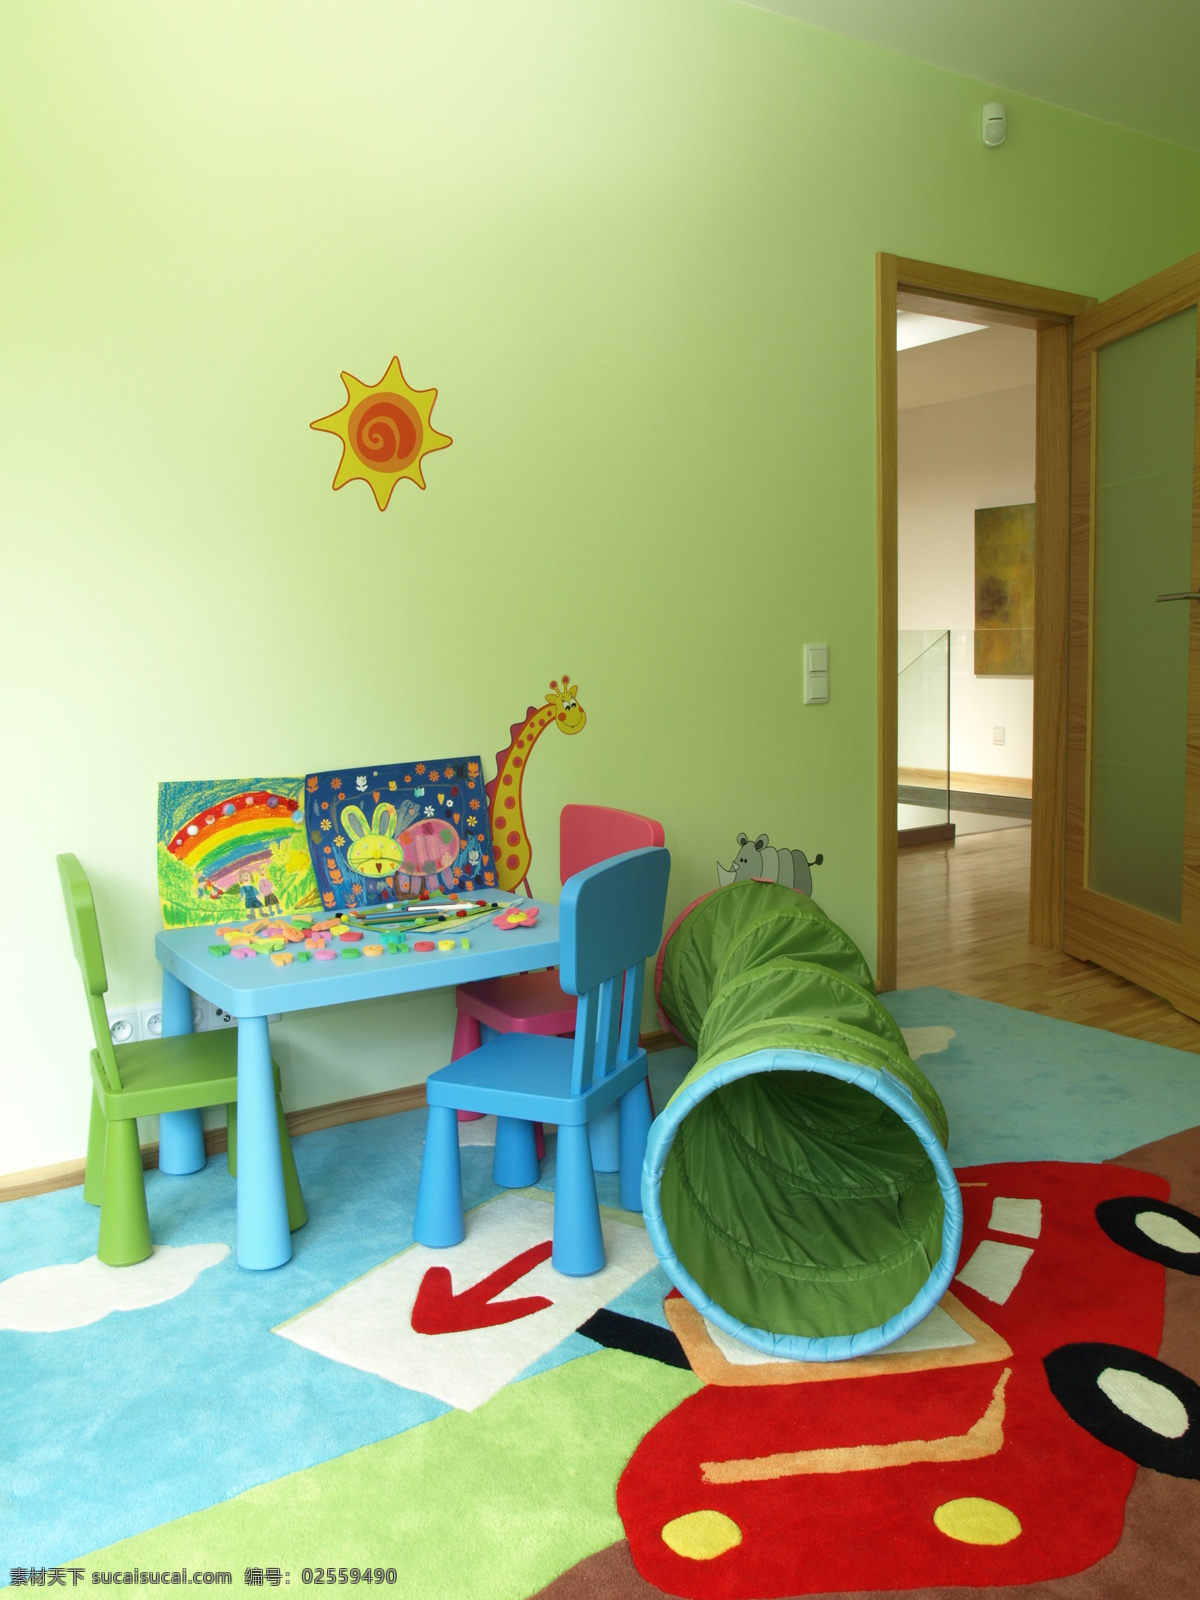 彩色 时尚 儿童 房 效果图 小桌子 小椅子 婴儿房 时尚家具 房室 内 室内设计 时尚家居 装修设计 装饰装潢 环境家居